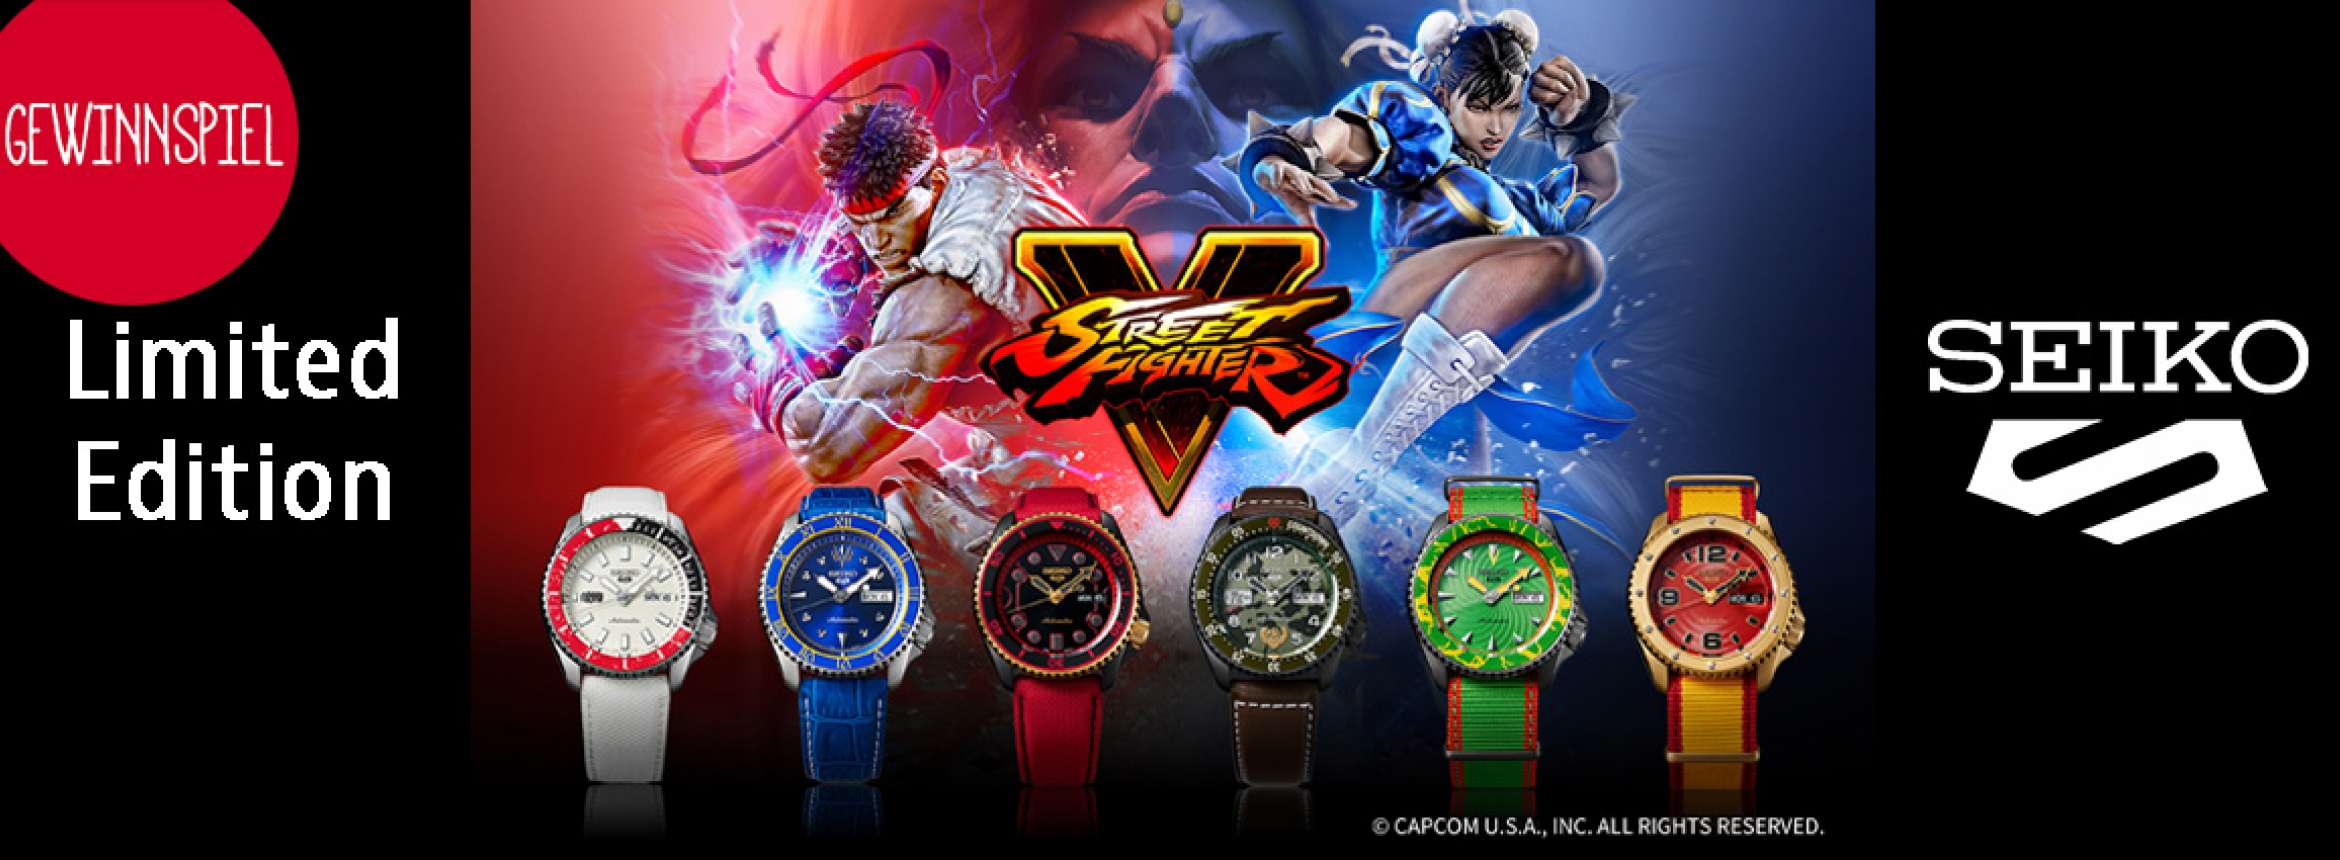 UNICUM Gewinnspiel: Seiko Street Fighter Motiv-Armbanduhr zu gewinnen